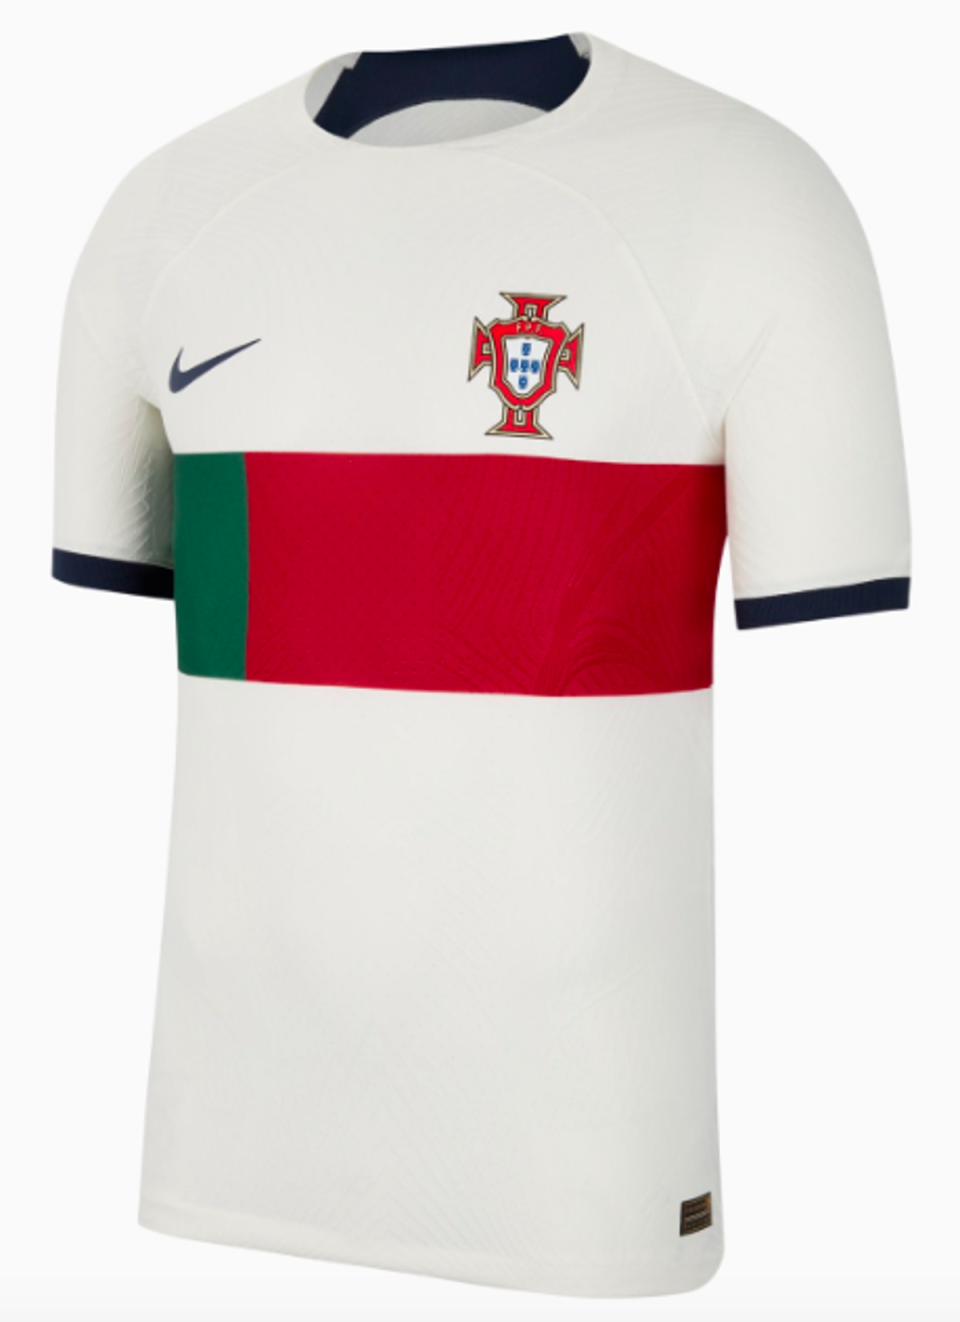 Portugal away (Nike)